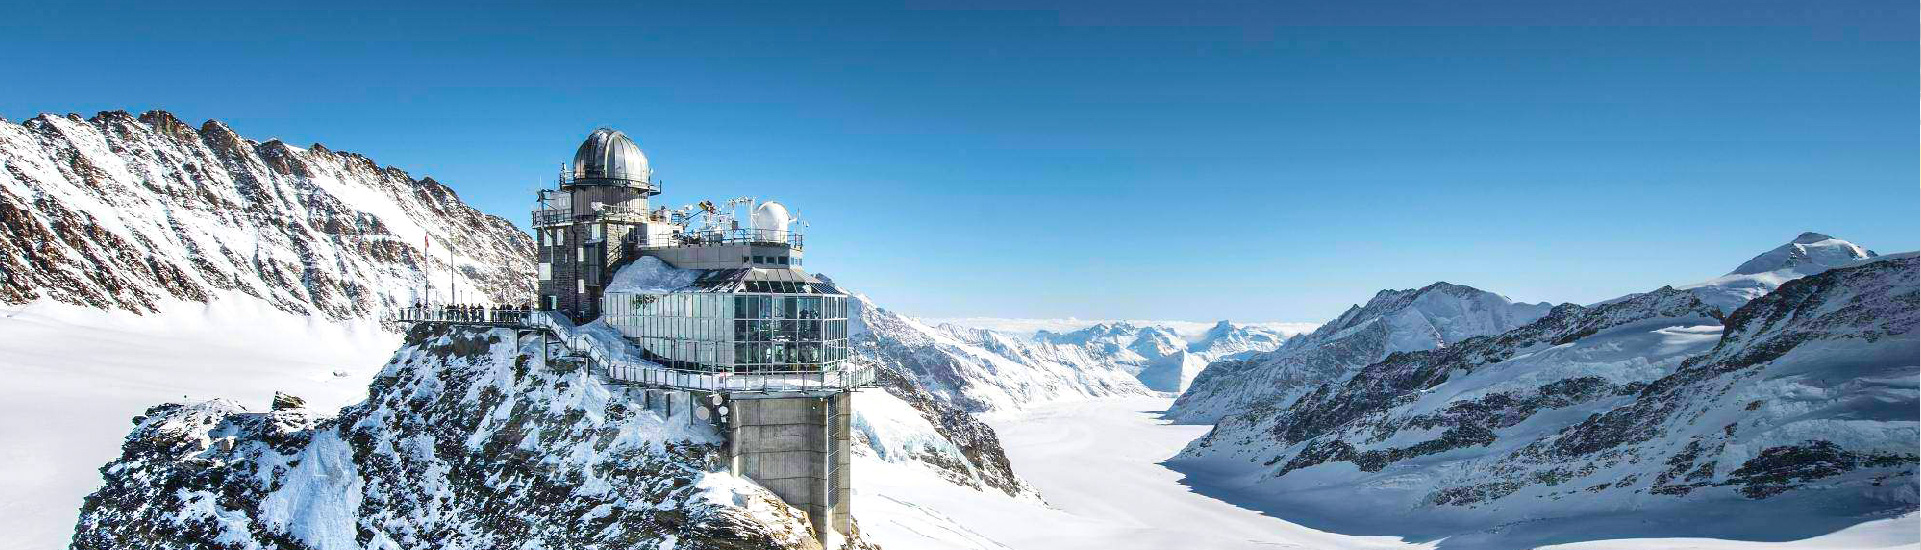 Jungfraujoch (Top Of Europe)